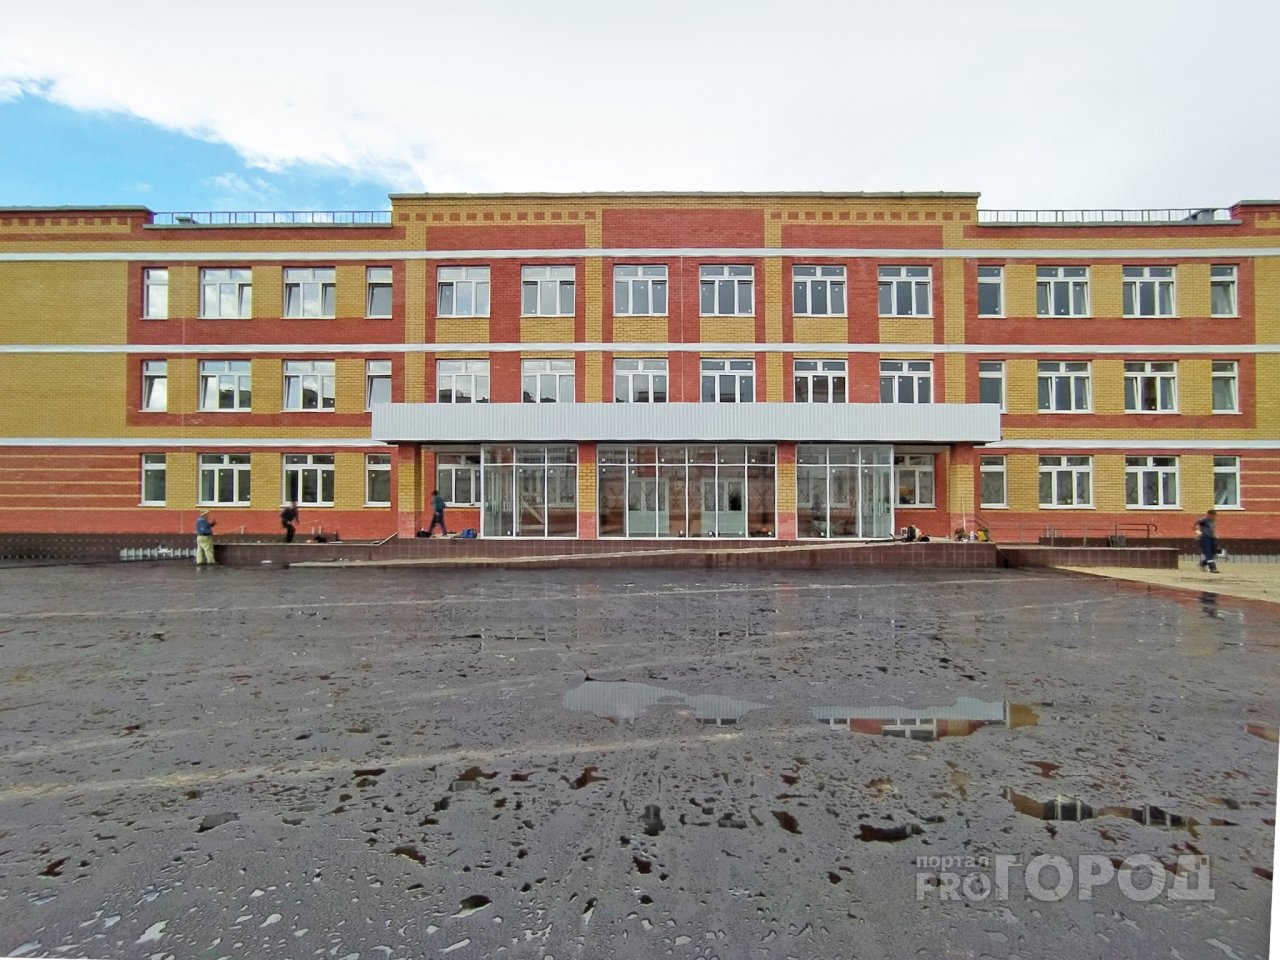 Впервые за 30 лет в Йошкар-Оле появилась новая школа